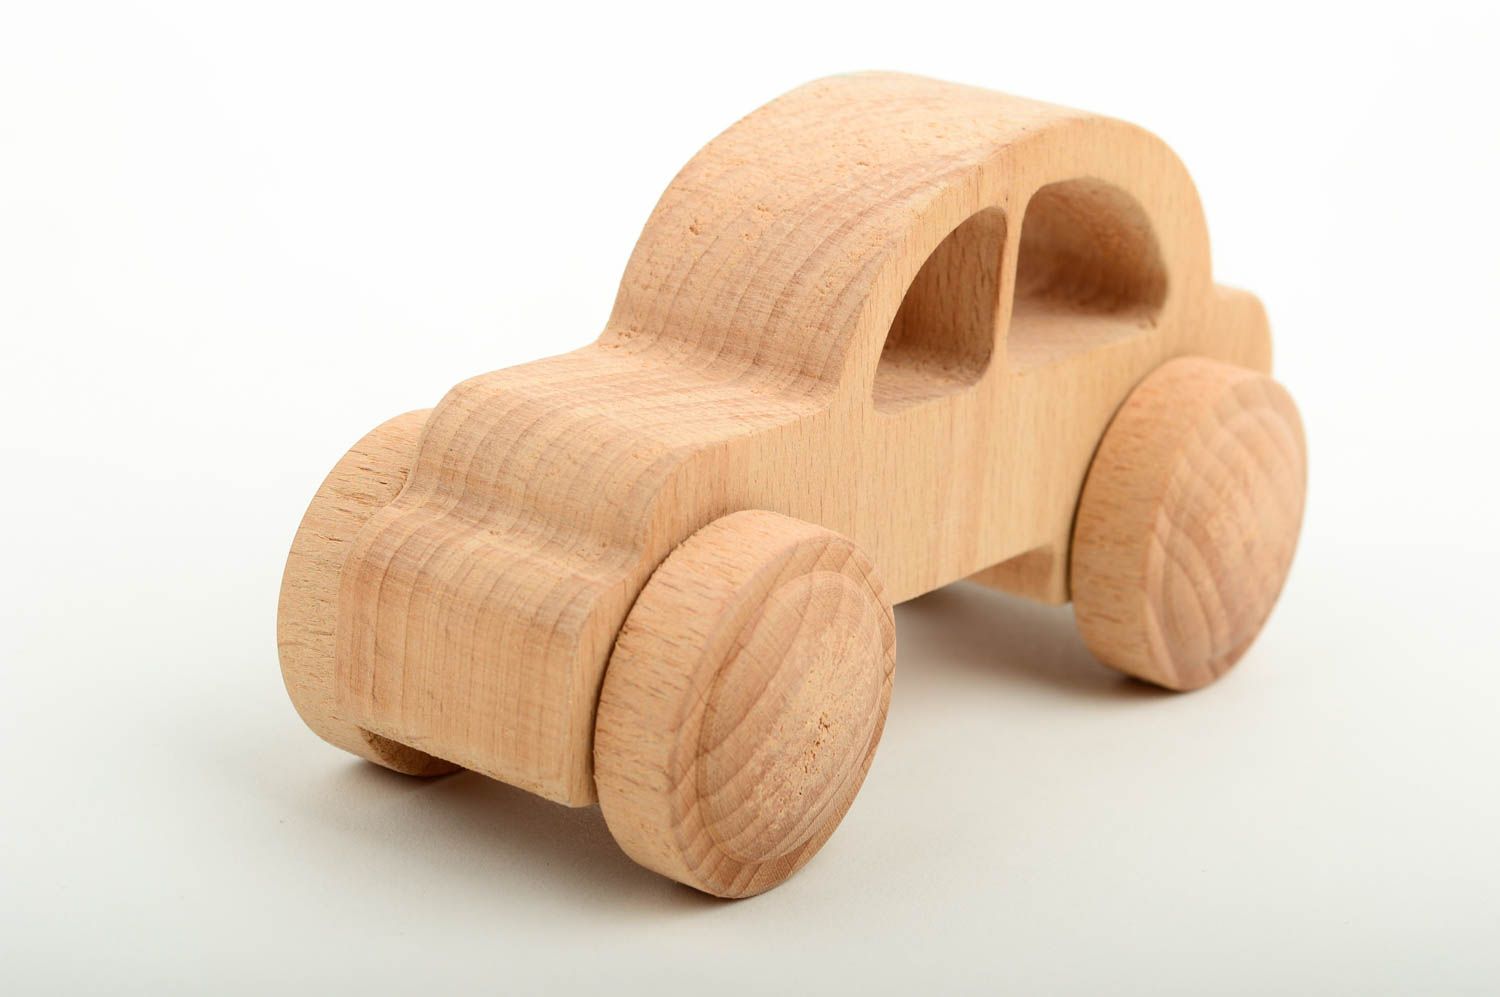 wooden children's toys